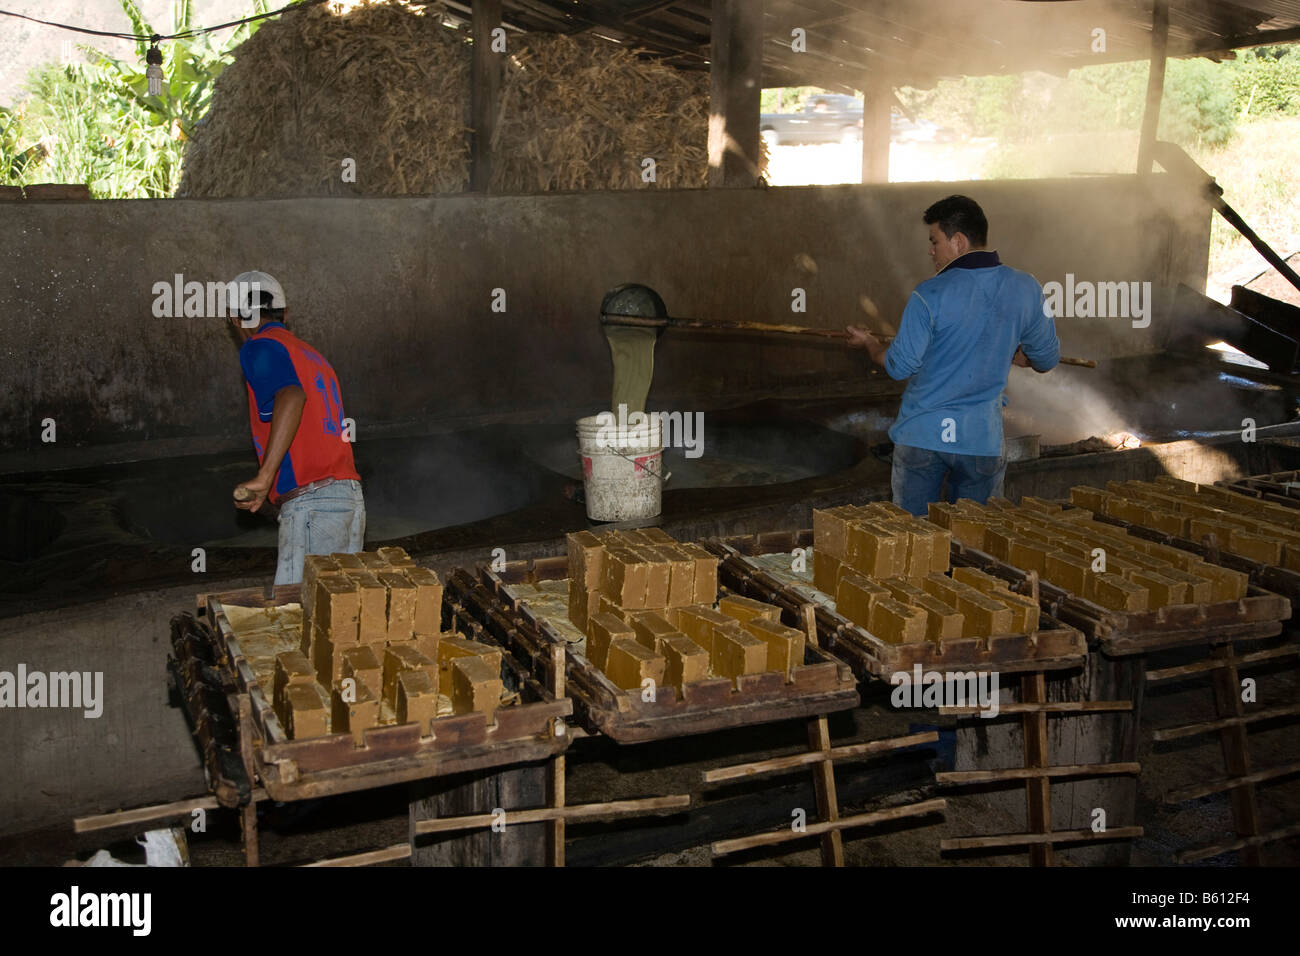 Les travailleurs de la canne à sucre, la cuisson du jus sucré, le Venezuela, l'Amérique du Sud Banque D'Images